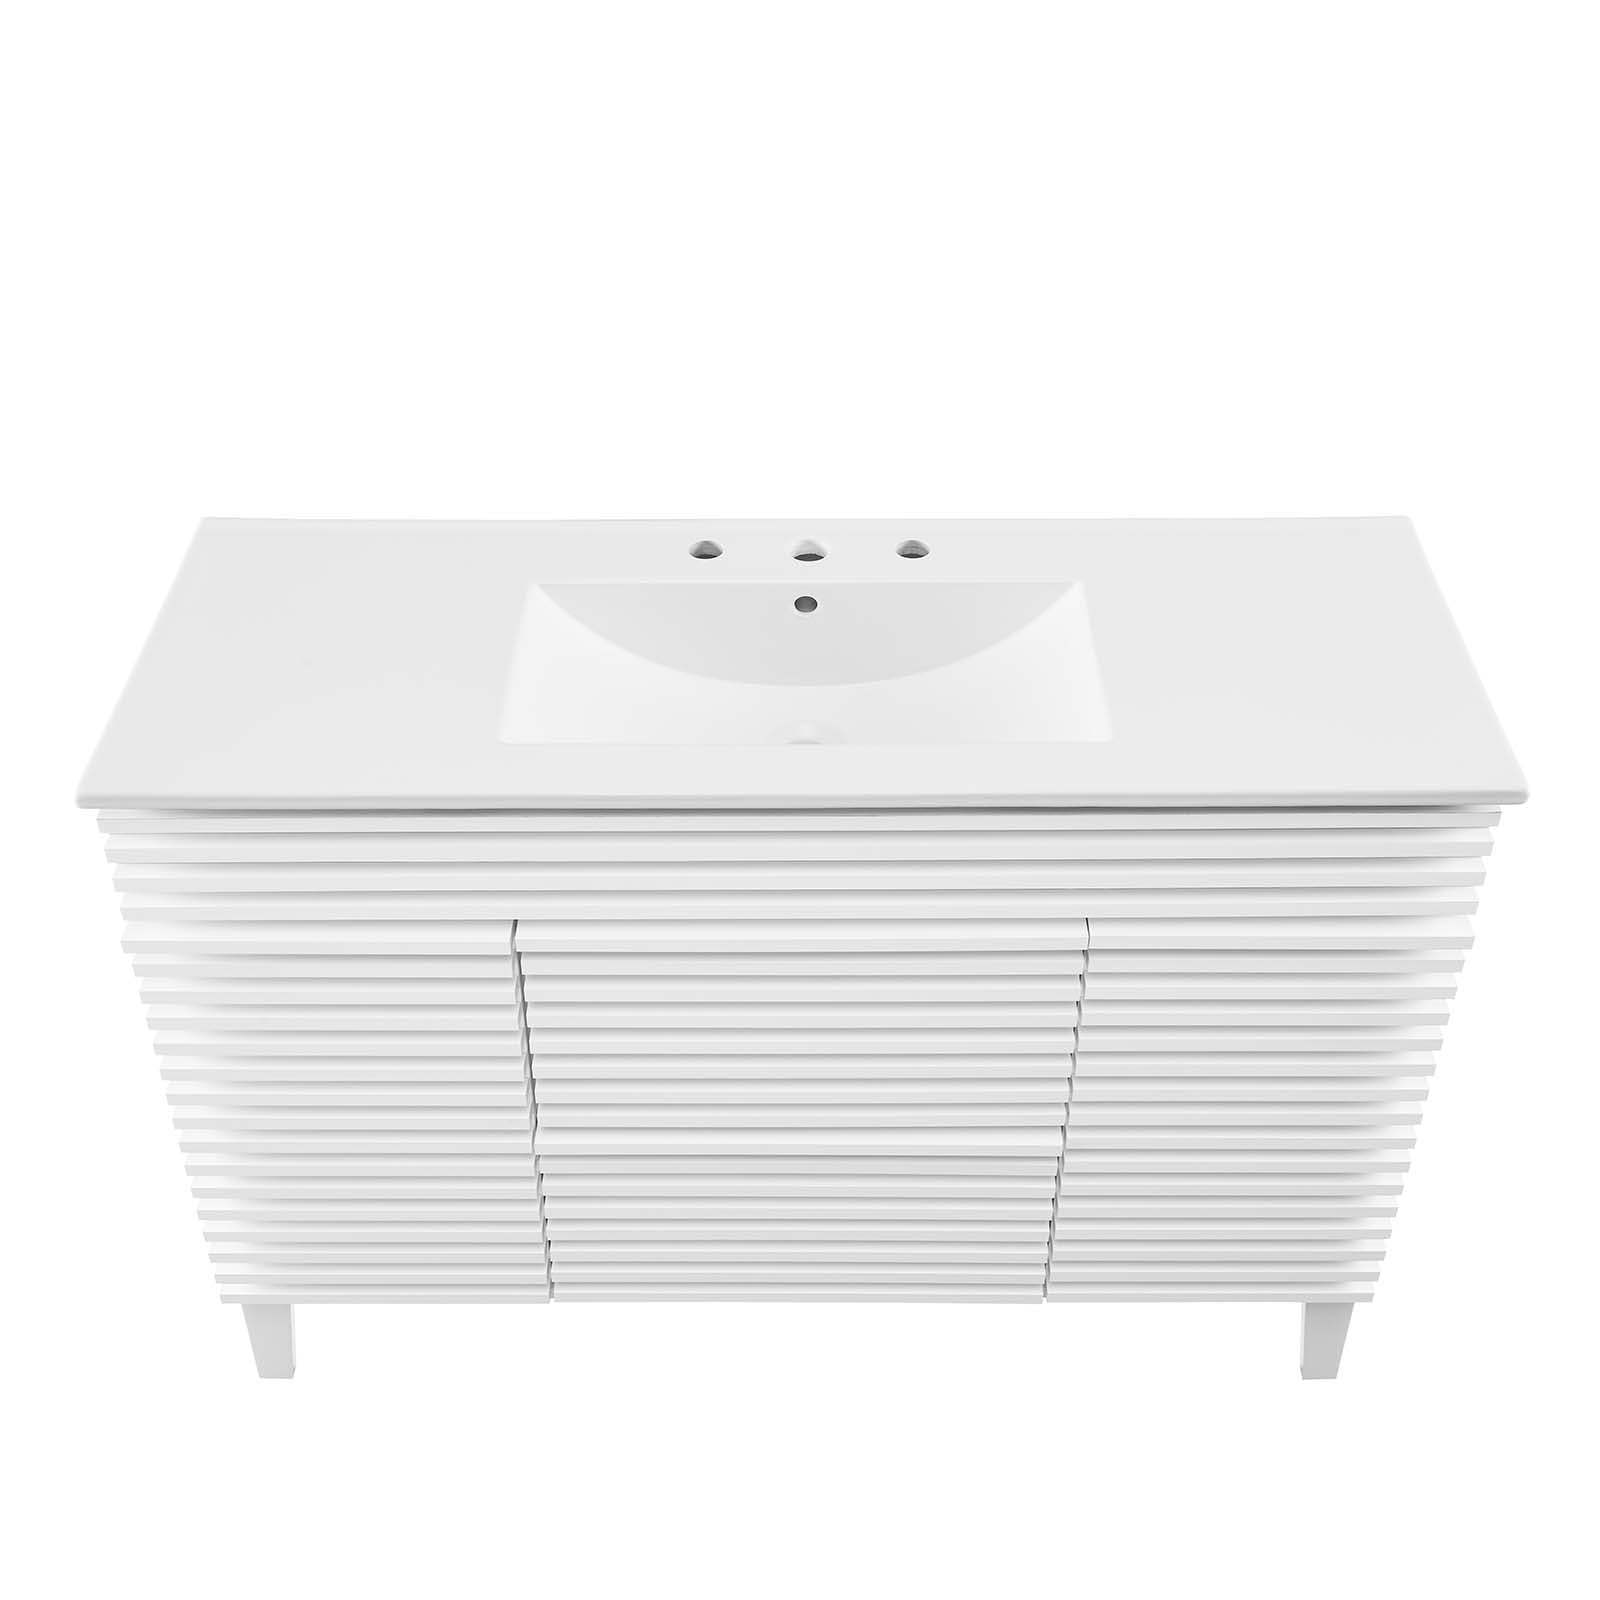 Render 48" Single Sink Bathroom Vanity - East Shore Modern Home Furnishings